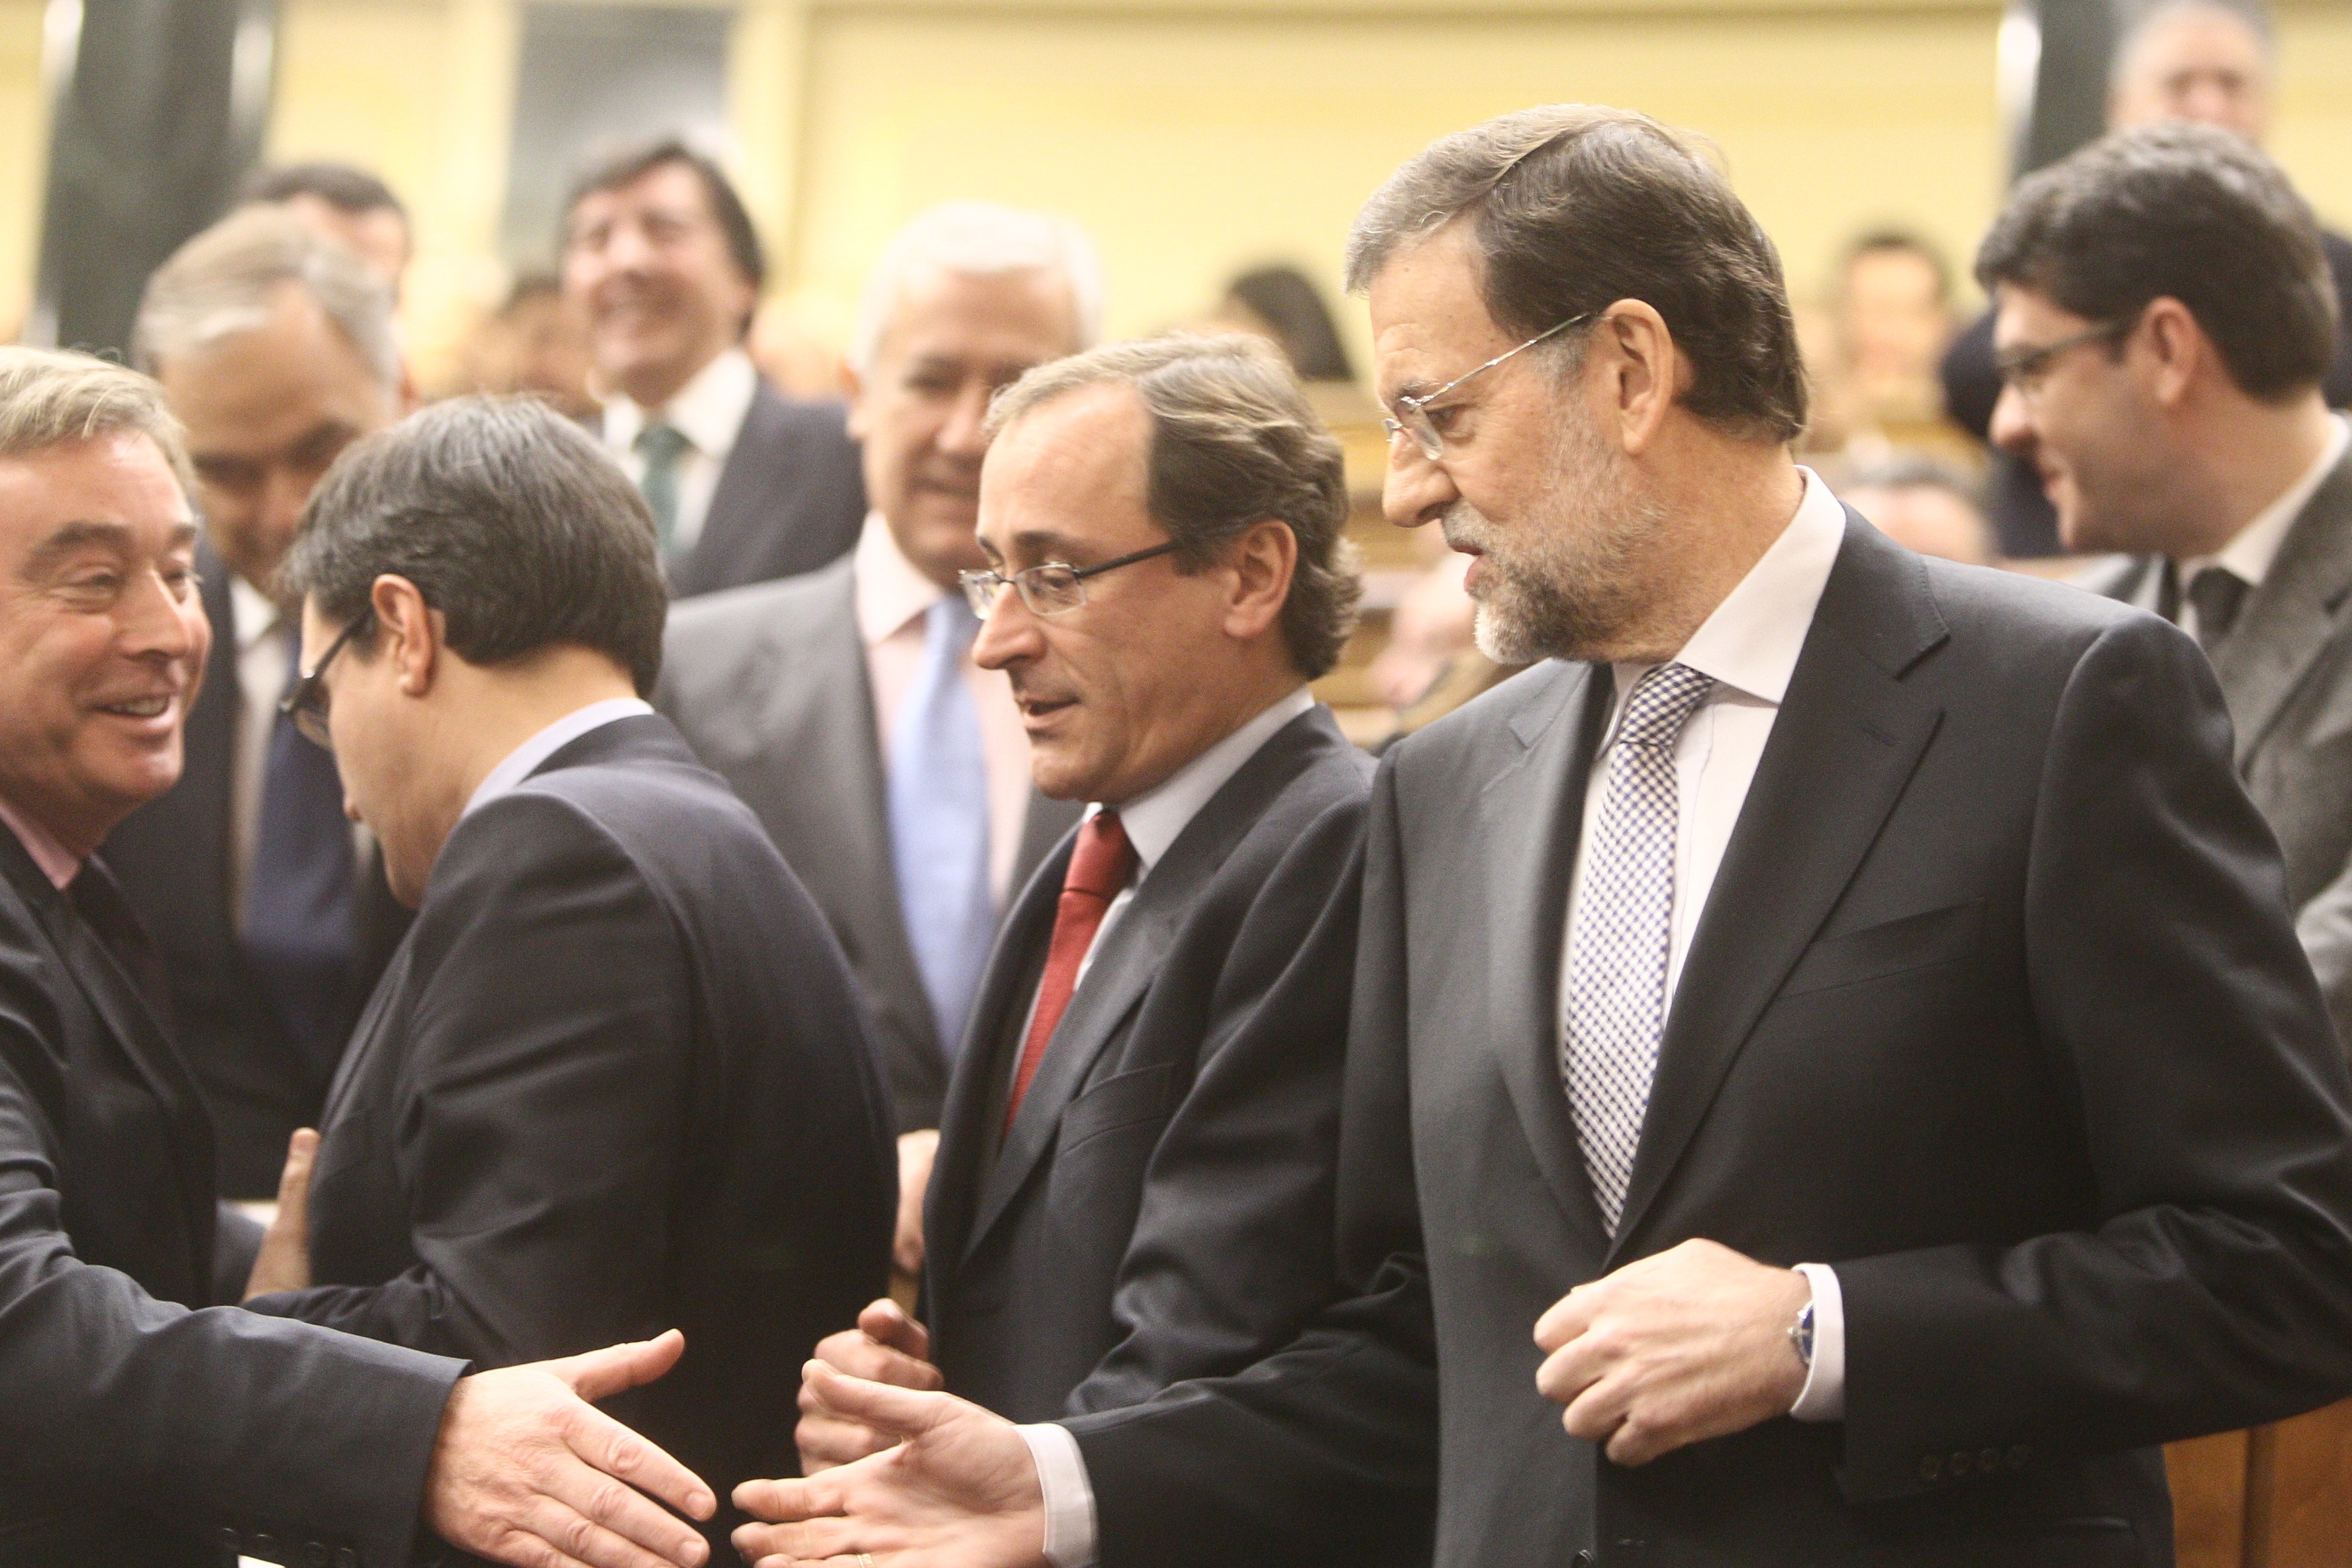 Diputados del PP tratan de averiguar la estructura de Gobierno analizando los detalles del discurso de Rajoy